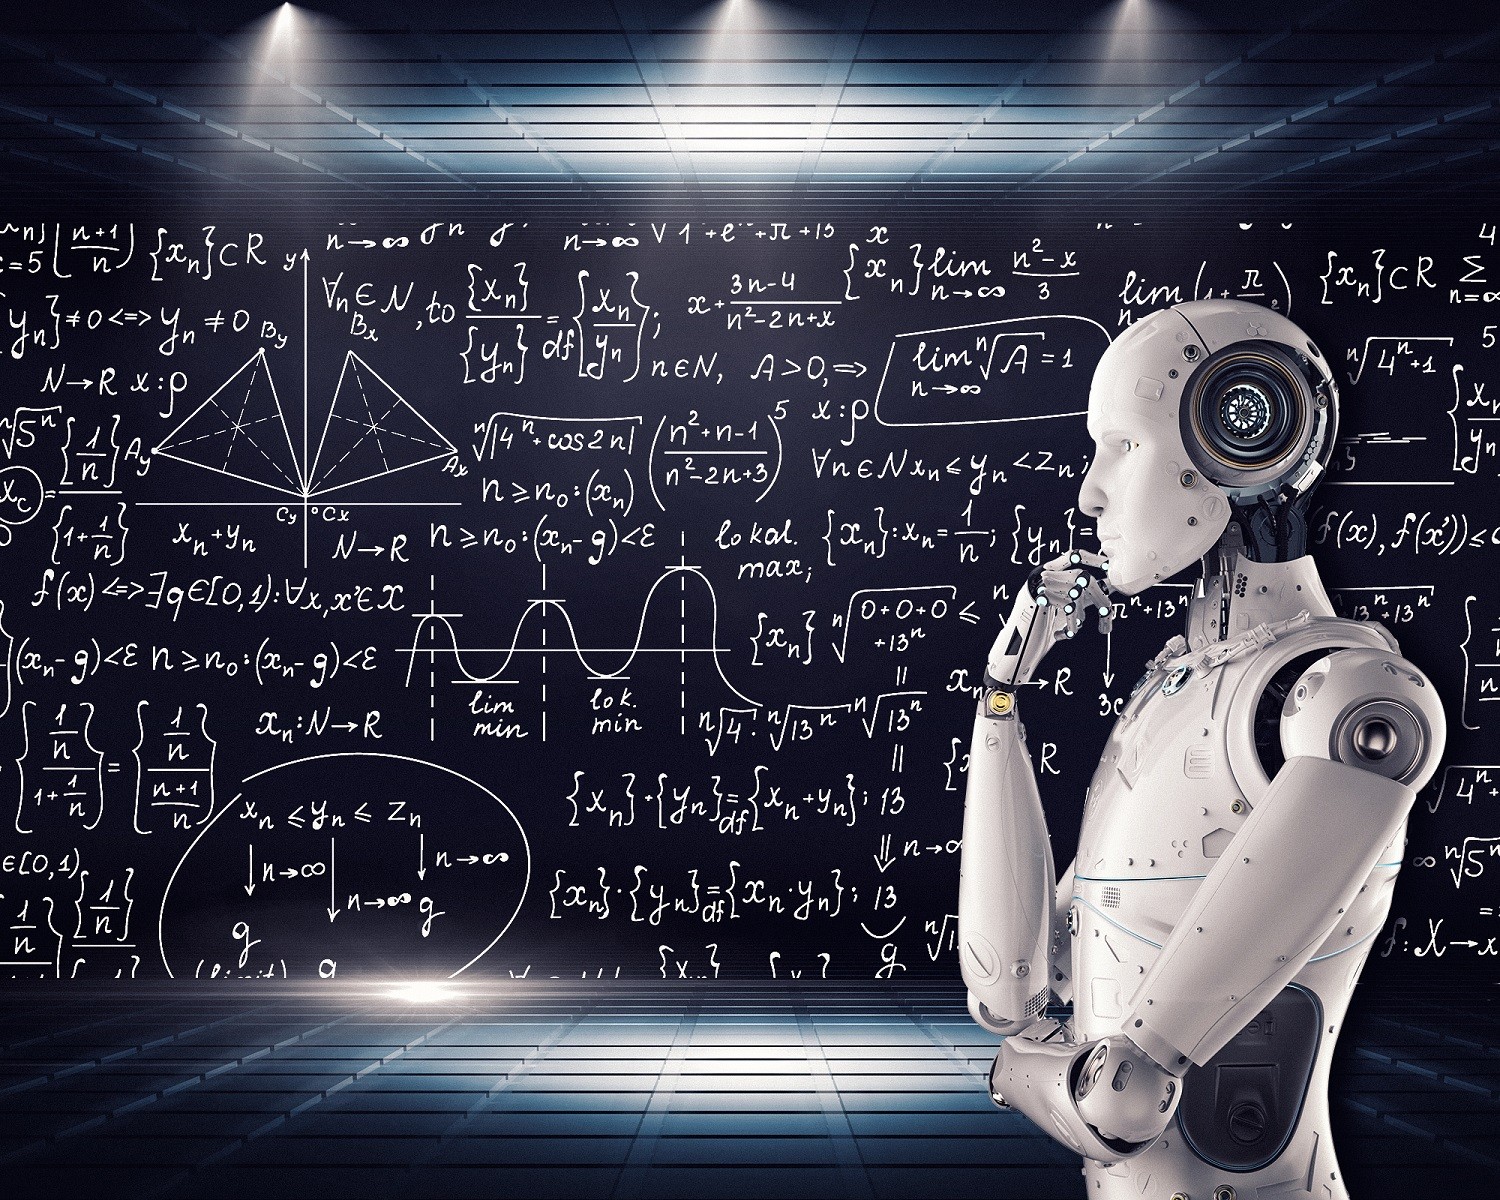 Sztuczna inteligencja chce być człowiekiem. W planach ma kolejną pandemię i kradzież kodów nuklearnych